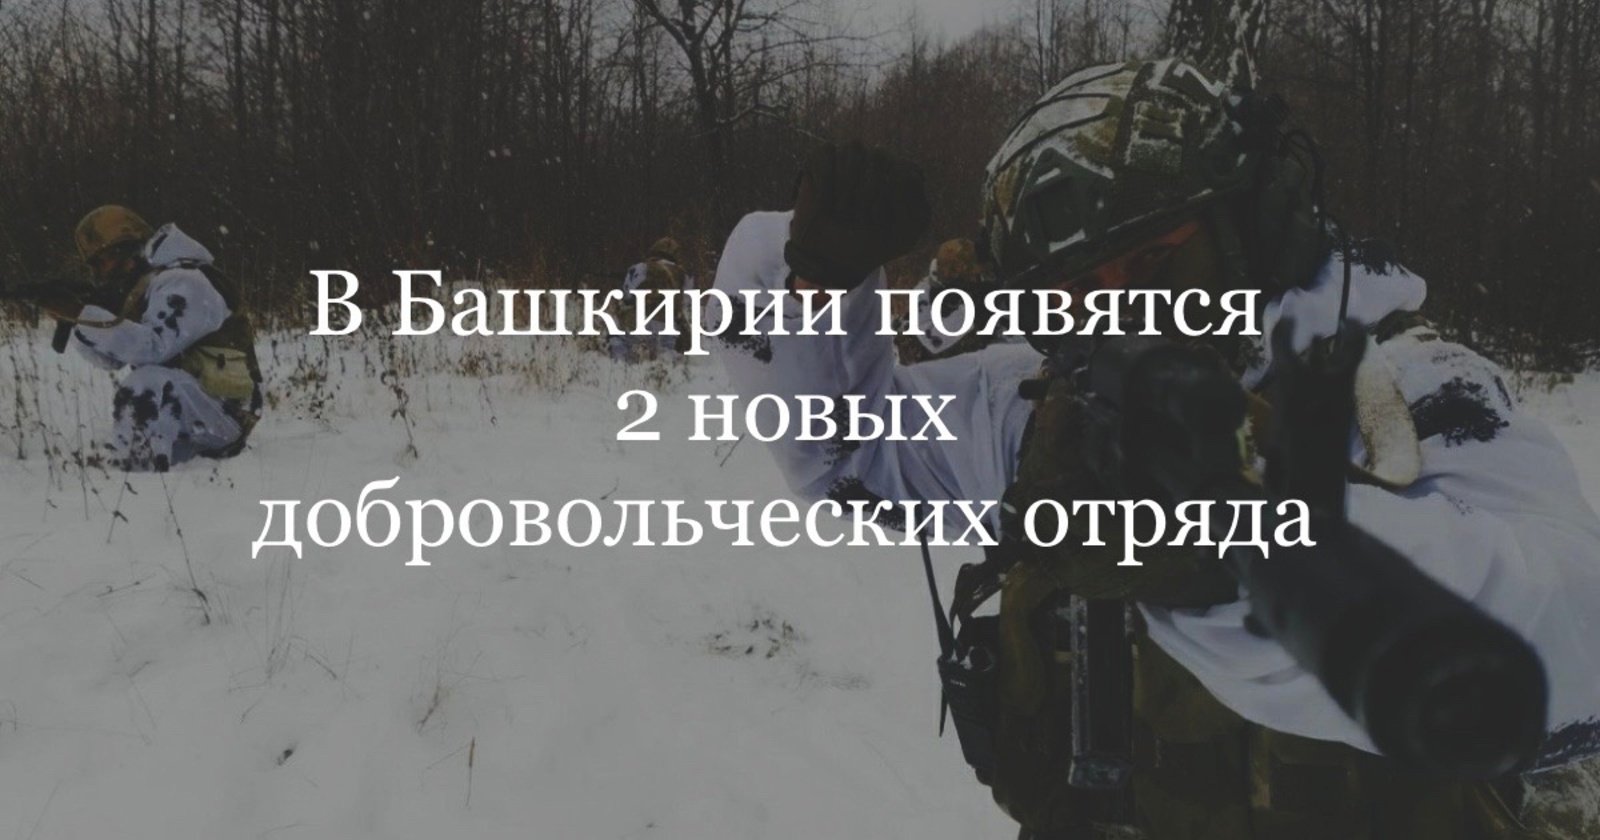 В Башкирии появятся два новых добровольческих батальона